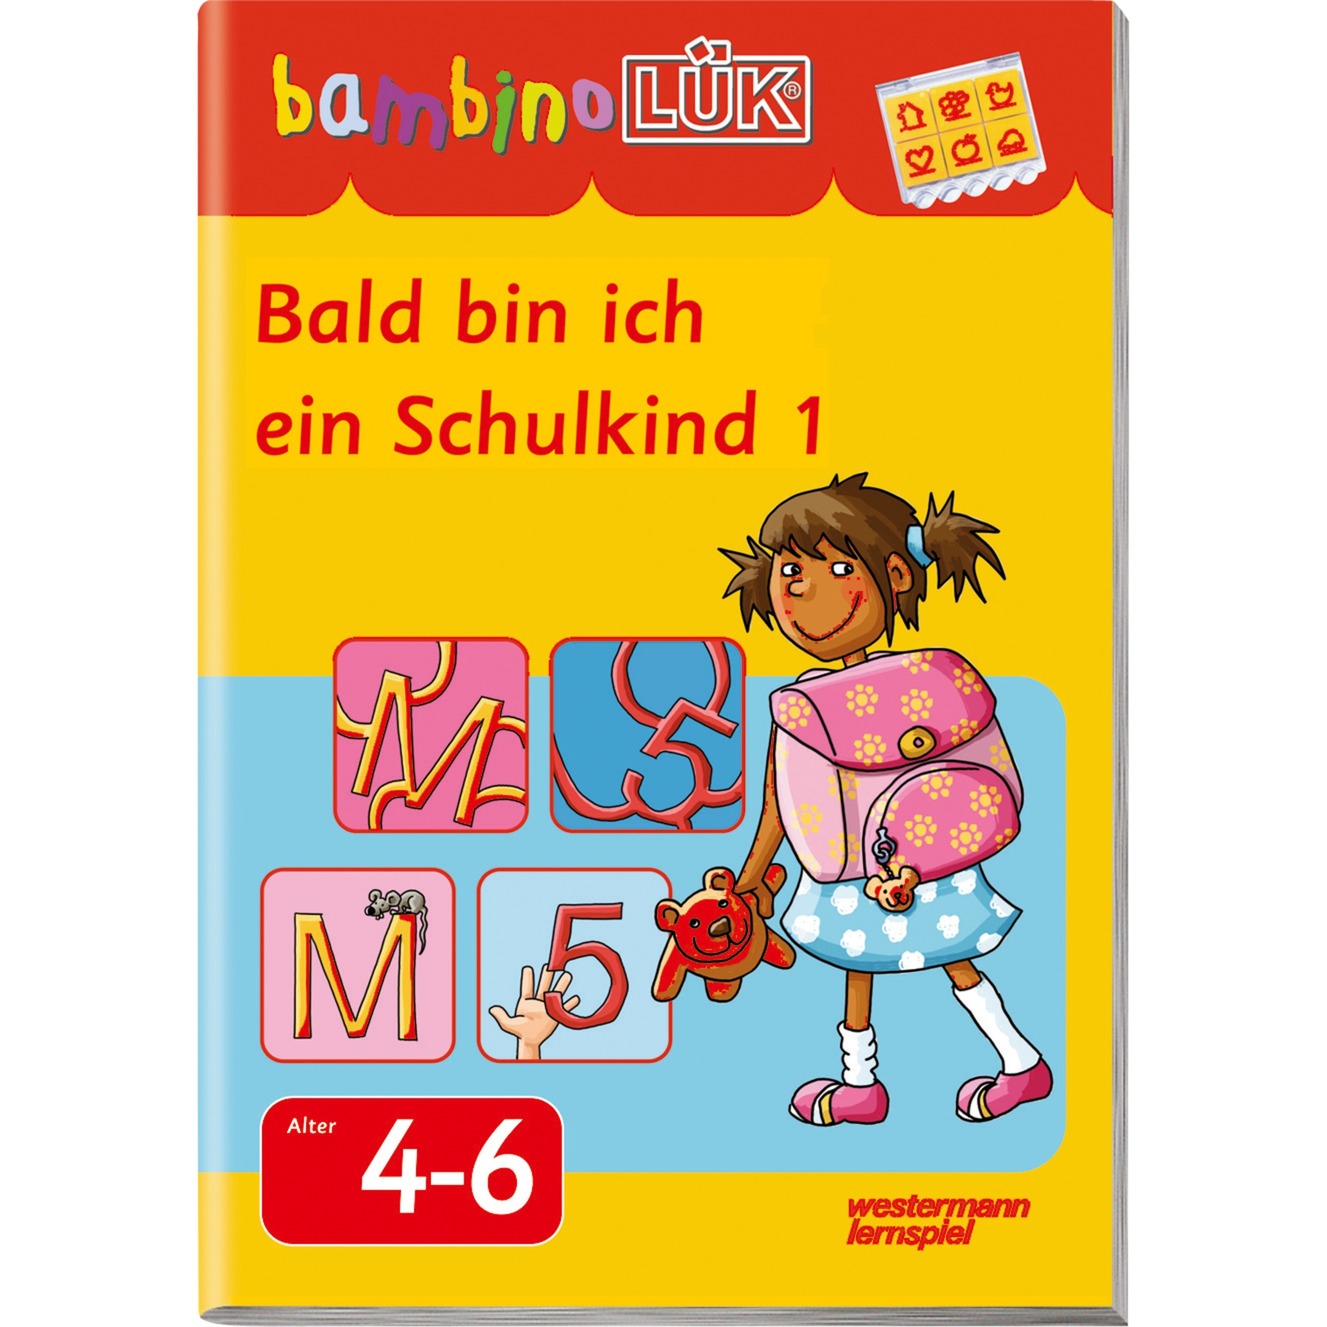 Bald bin ich ein Schulkind 1 książka dla dzieci, Książki edukacyjne